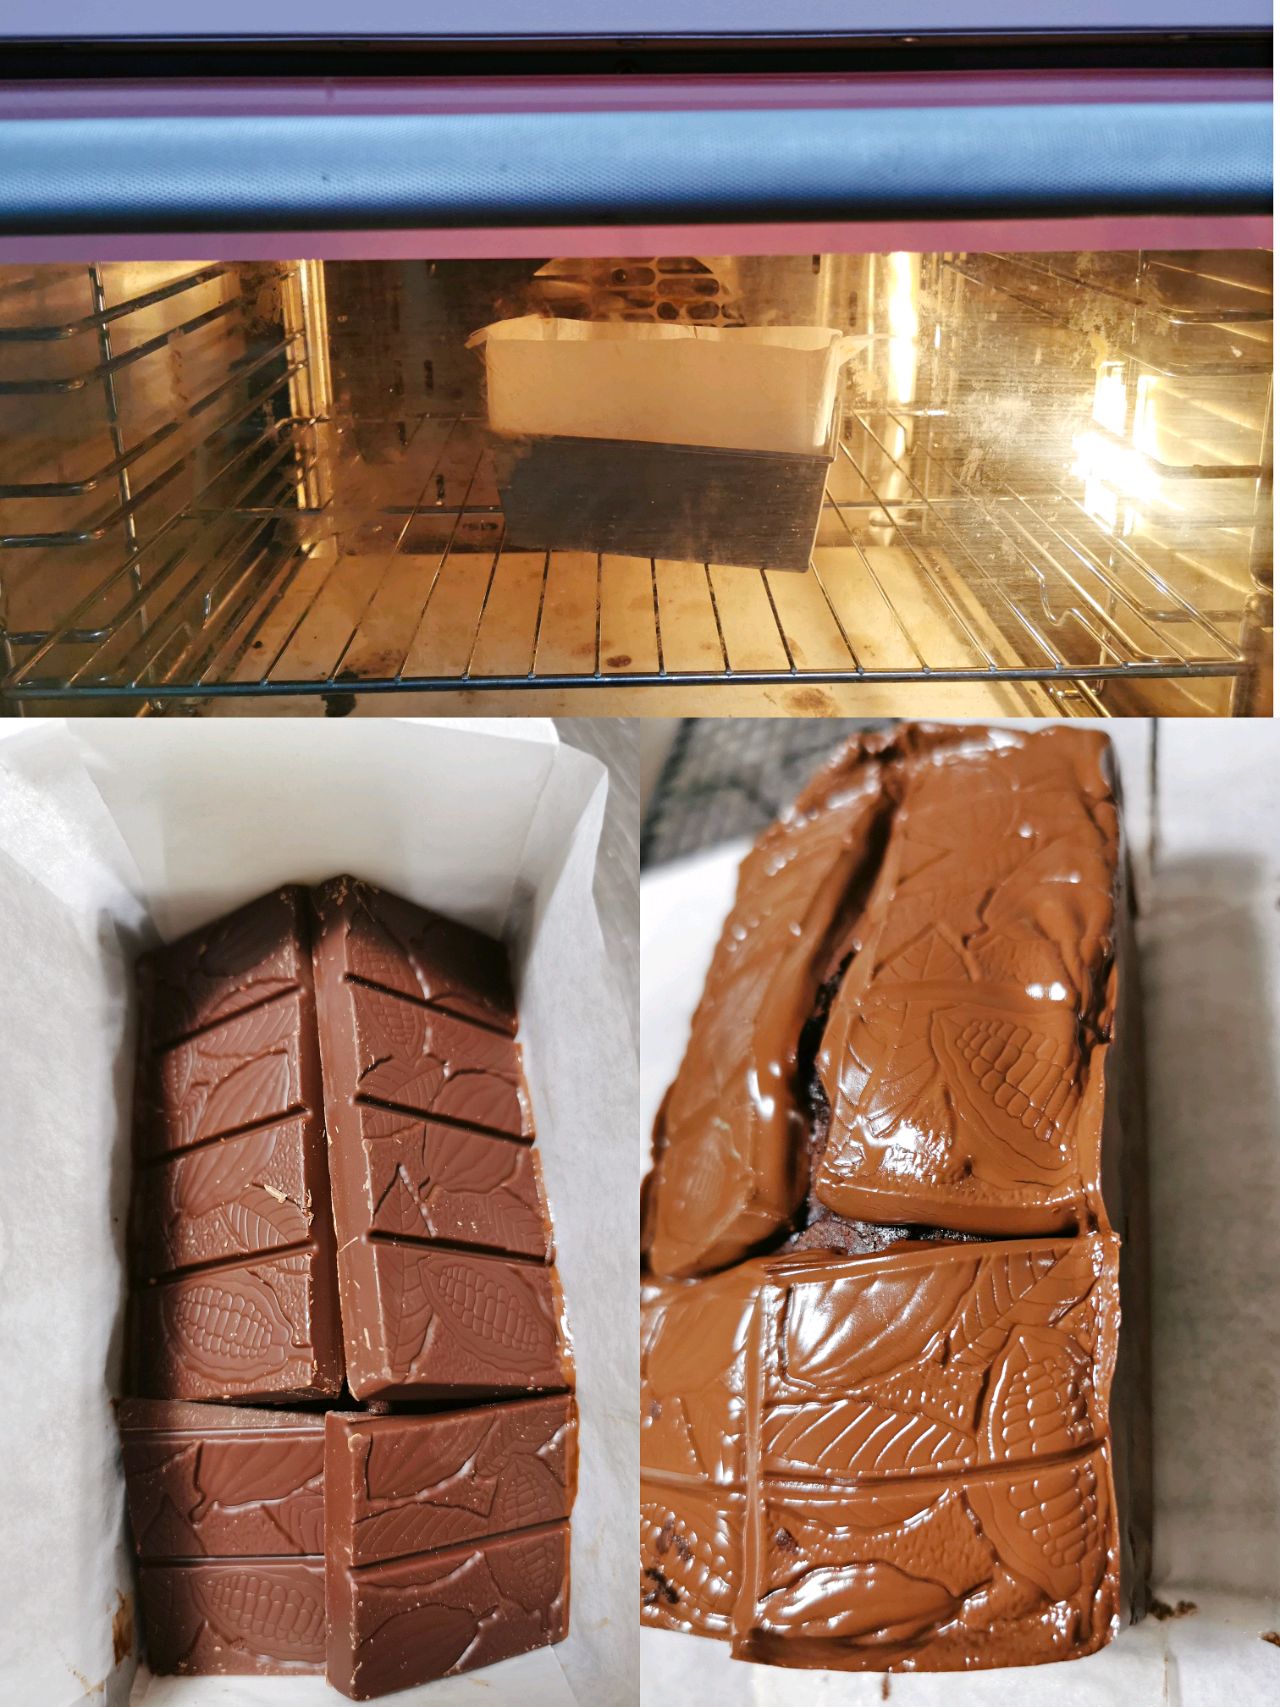 熔岩巧克力蛋糕怎么做_熔岩巧克力蛋糕的做法_A芈菇凉_豆果美食